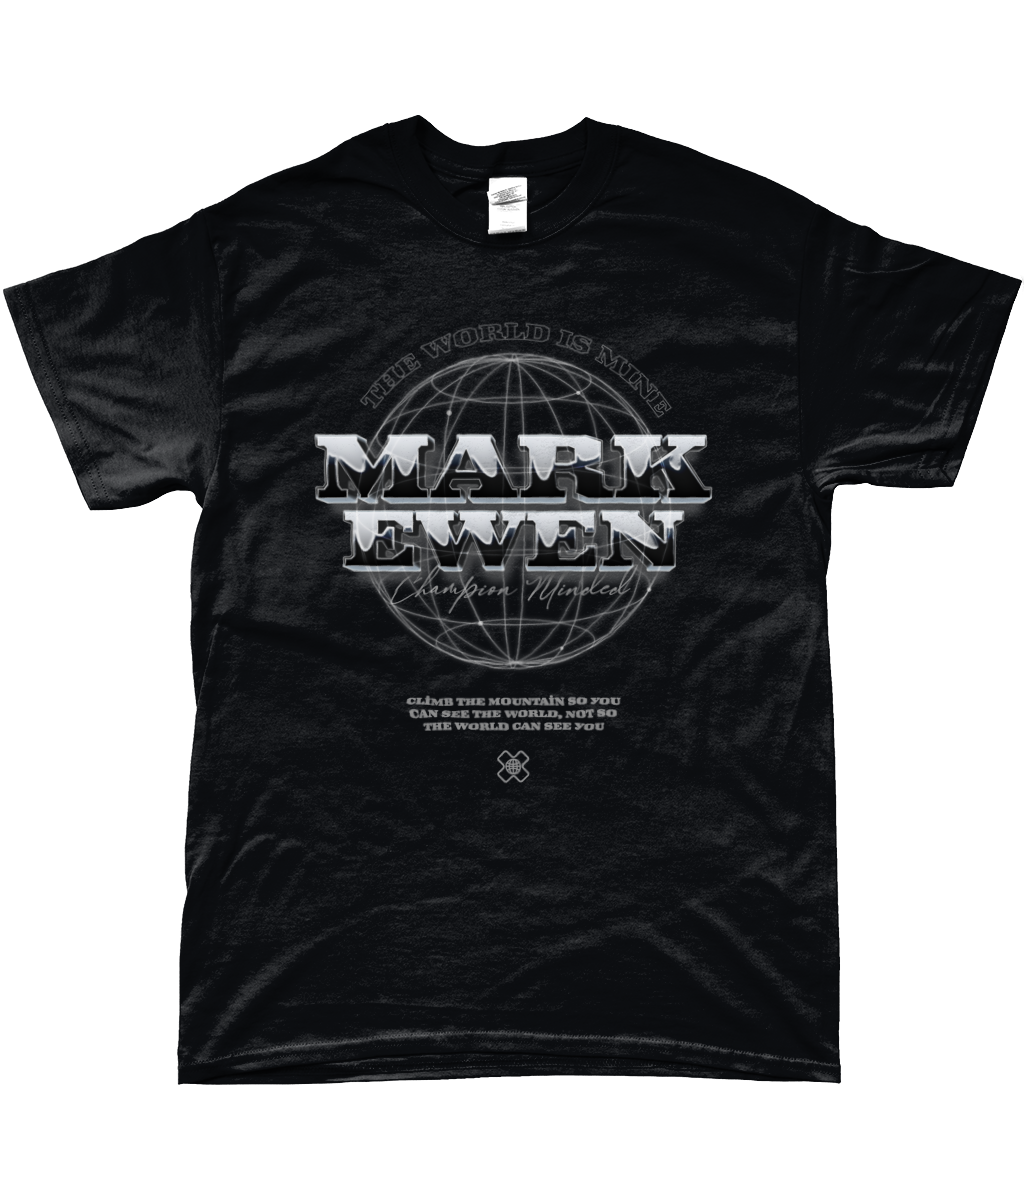 Mark Ewen World T-Shirt